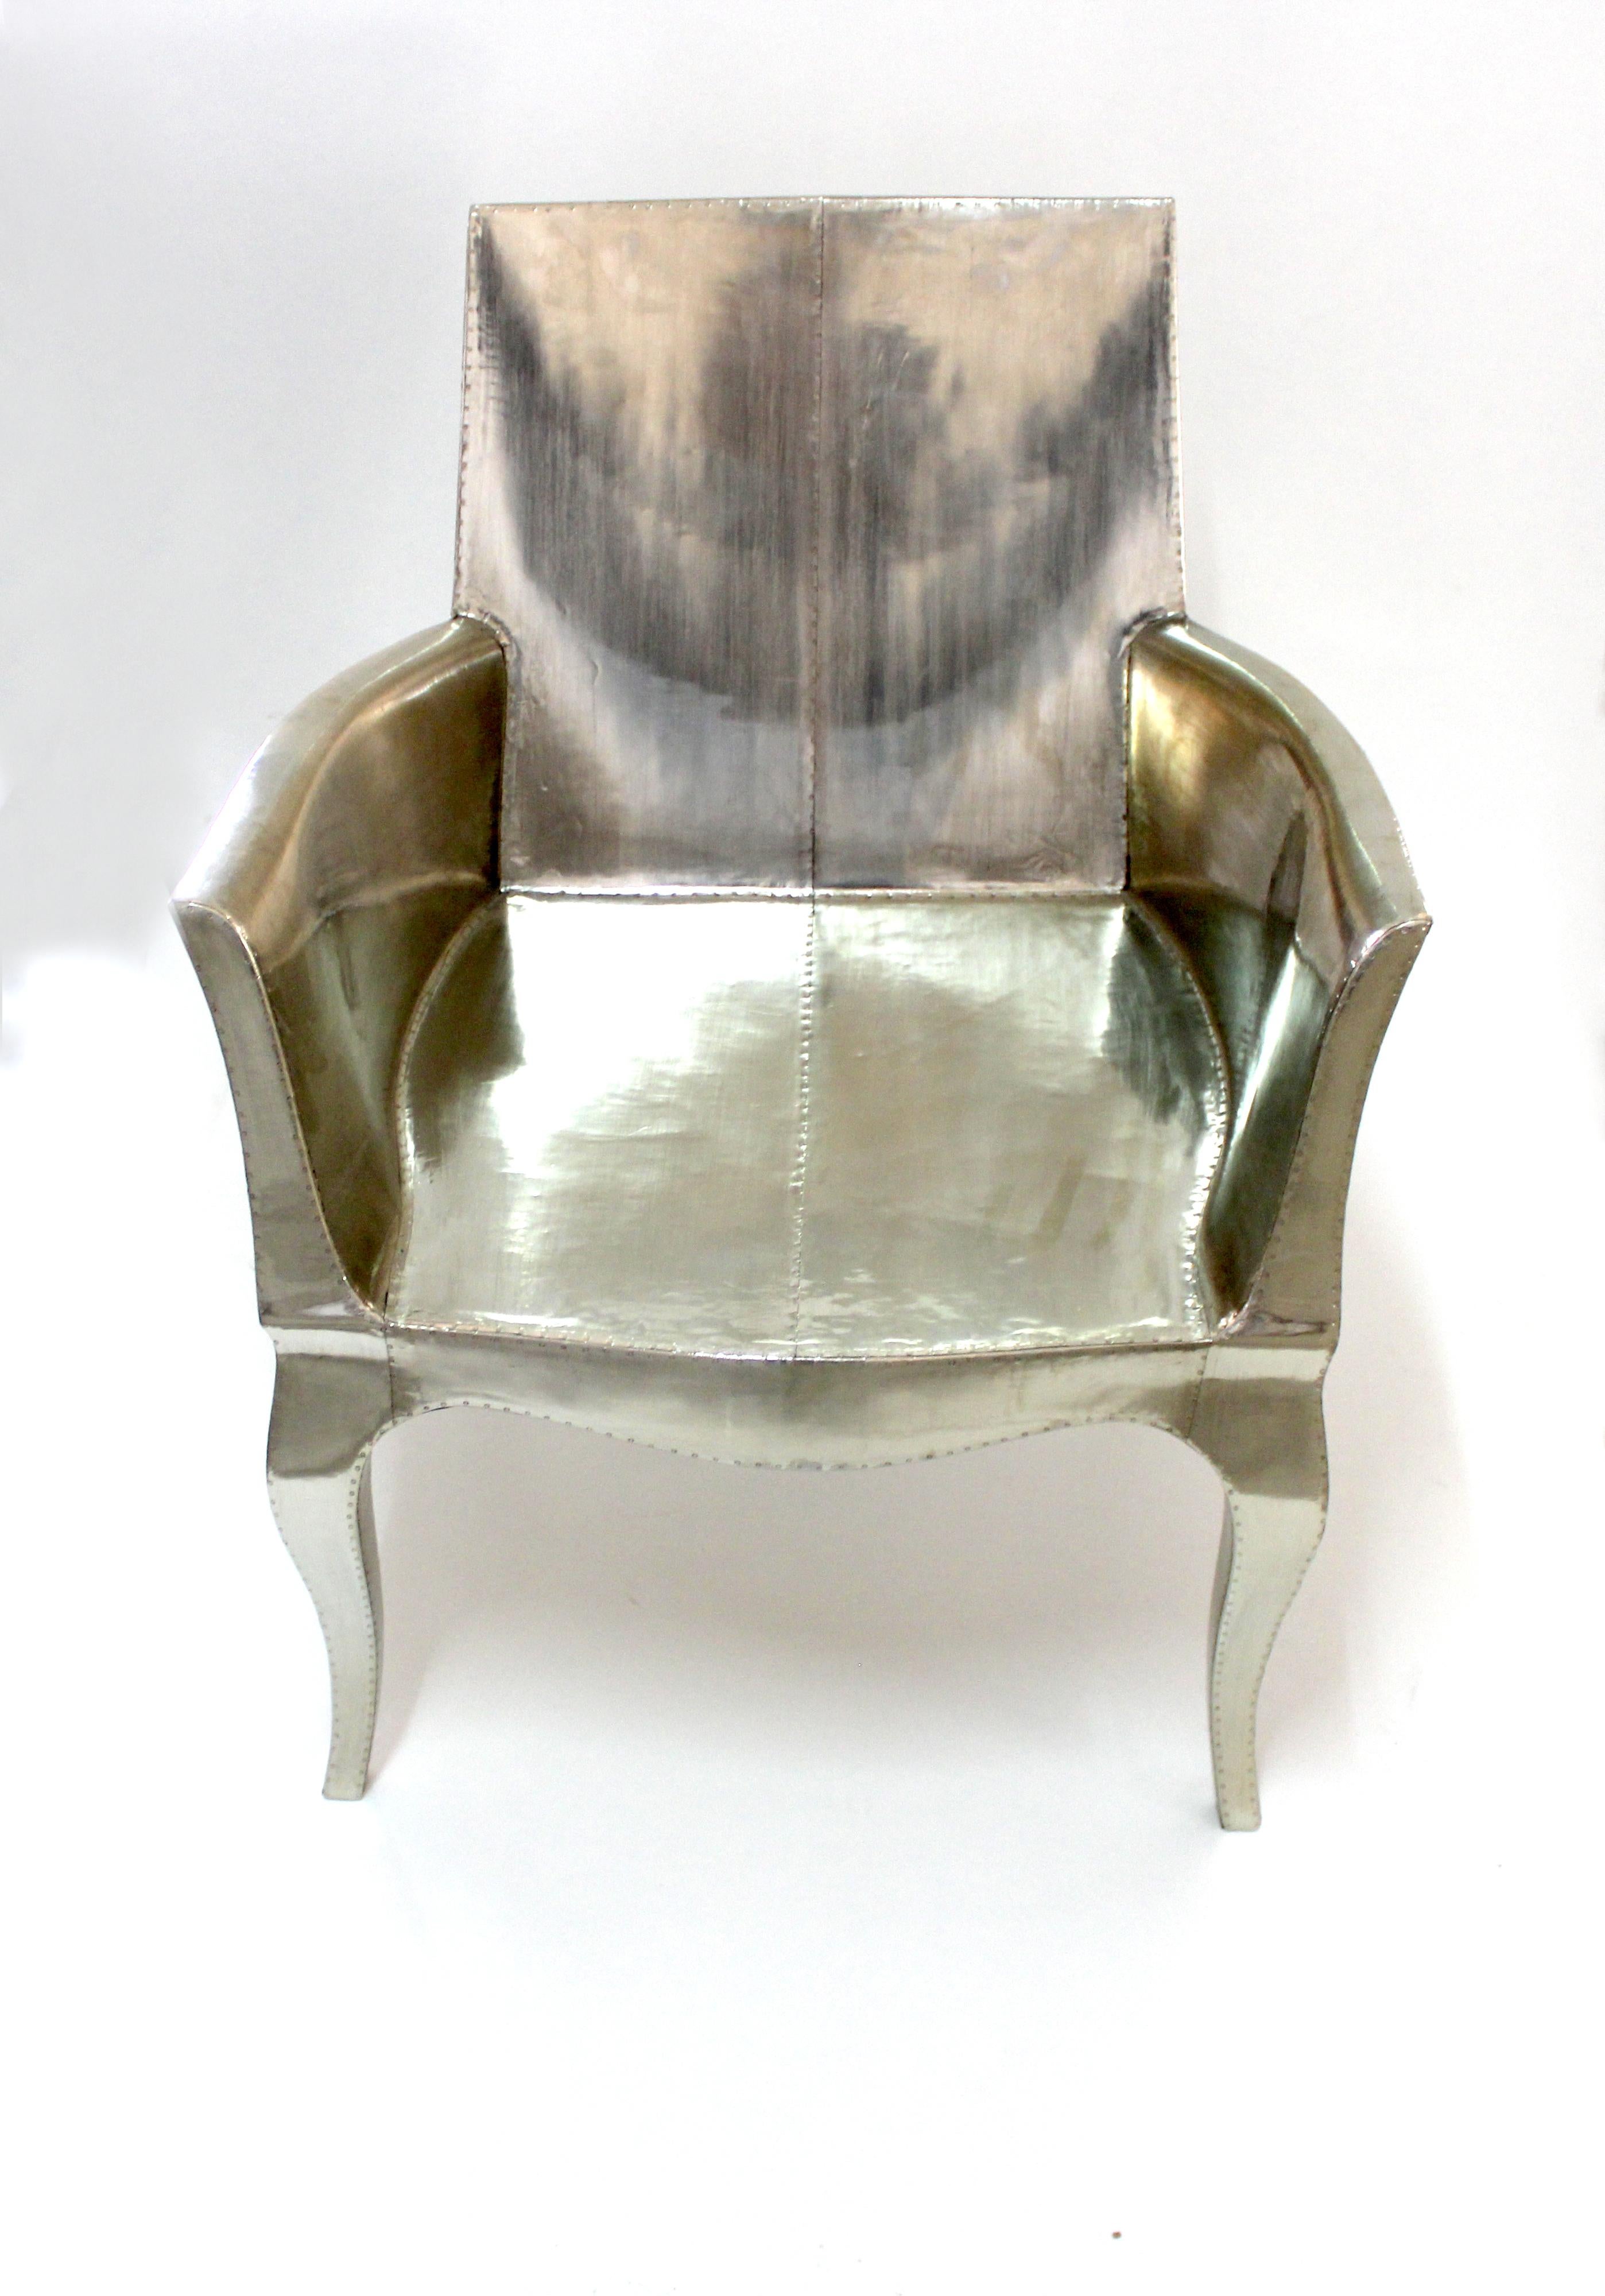 Wir stellen die Art Deco Chairs vor, eine atemberaubende  Art-Déco-Stühle, entworfen von dem berühmten Paul Mathieu für Stephanie Odegard. Dieses elegante Art-Déco-Stuhl-Duo besticht durch sein einzigartiges, geschwungenes Profil, das einen